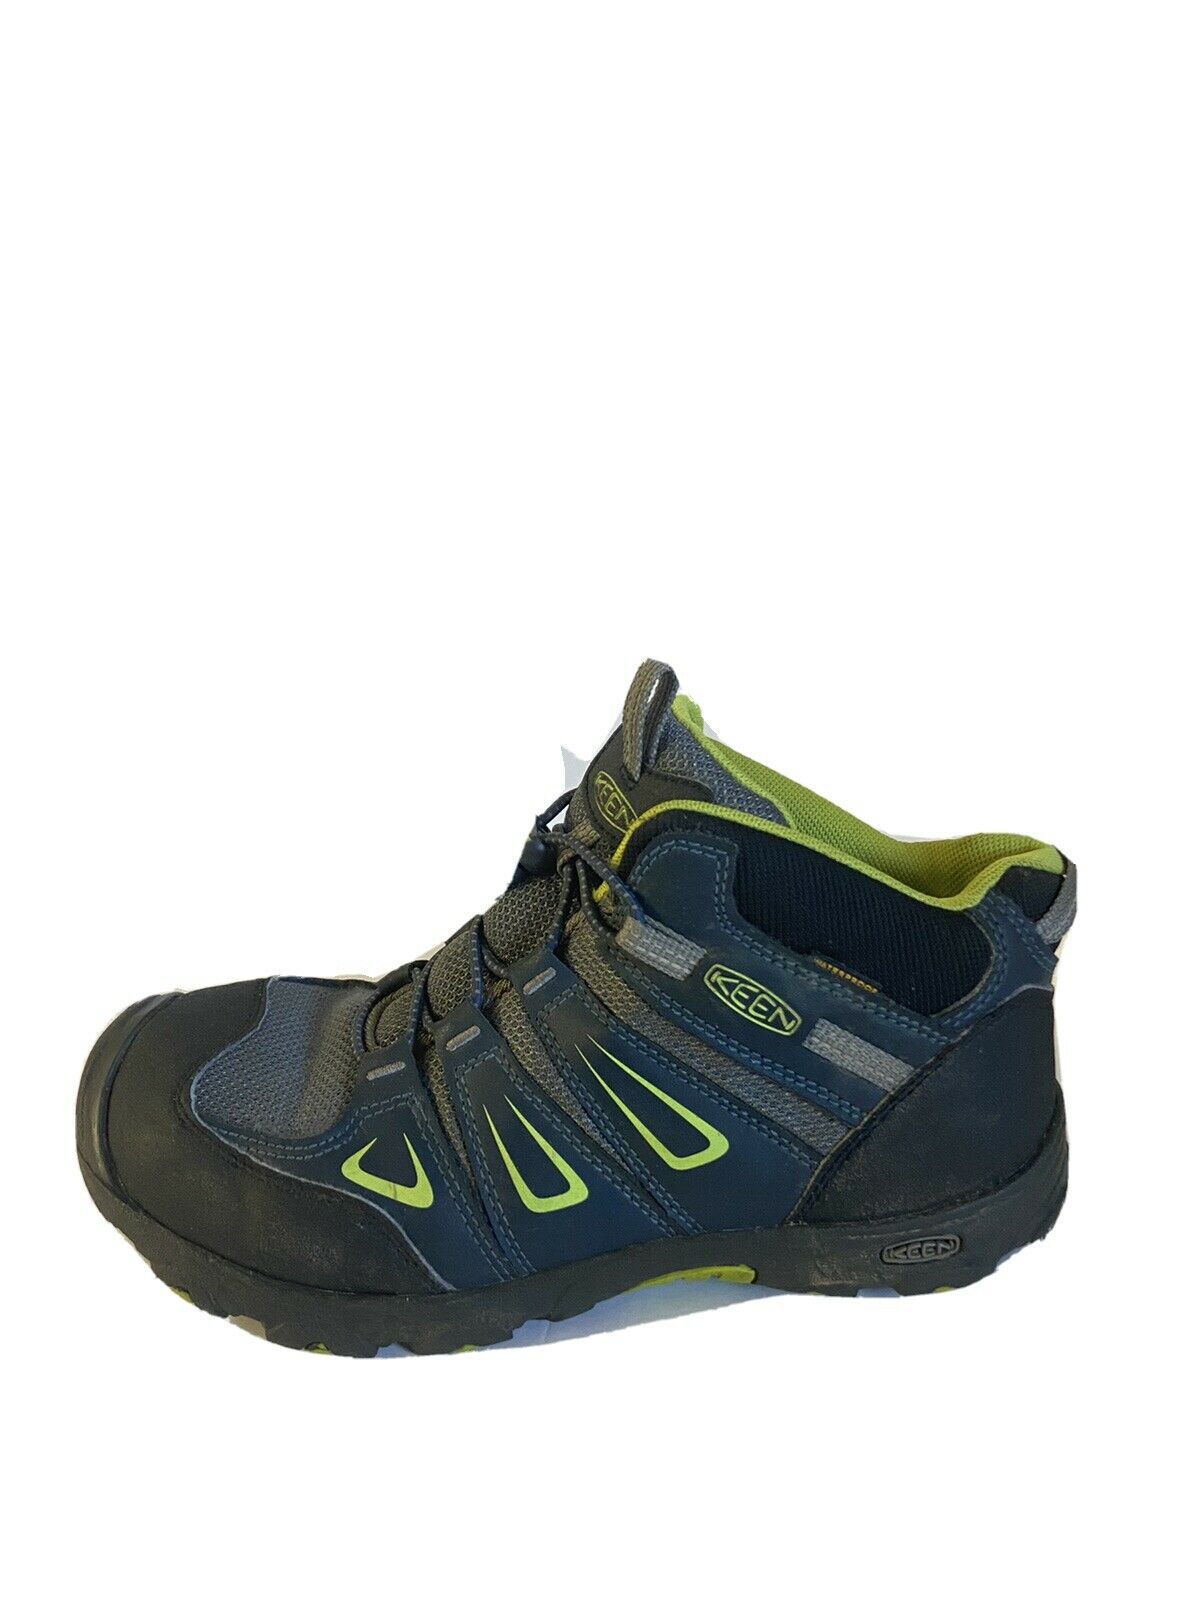 Keen boys Boots Oakridge Mid waterproof hiking shoes size 6 Blue Black